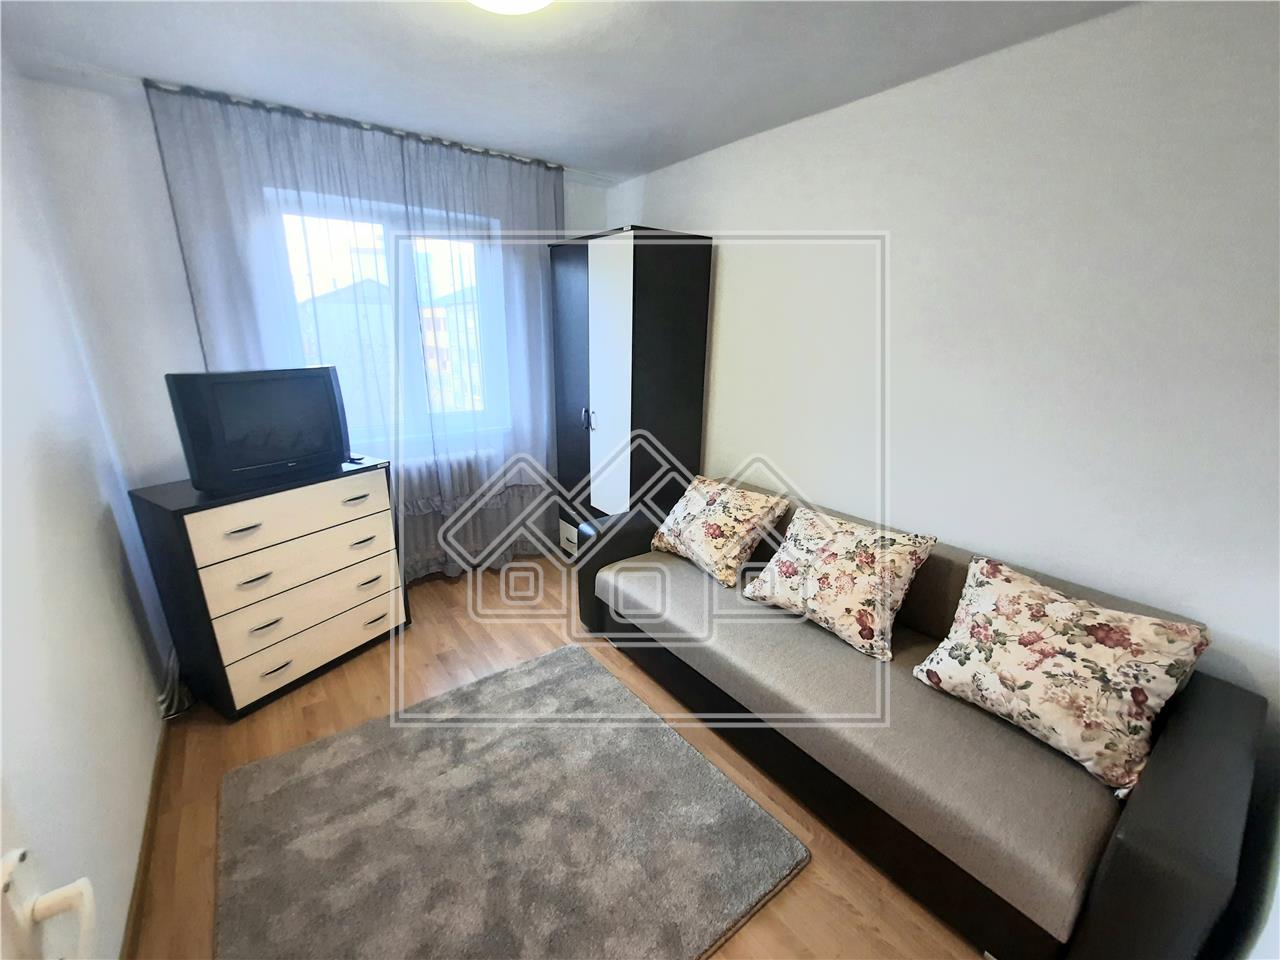 Apartment for rent in Alba Iulia - 2 rooms - 38 sqm - Cetate area